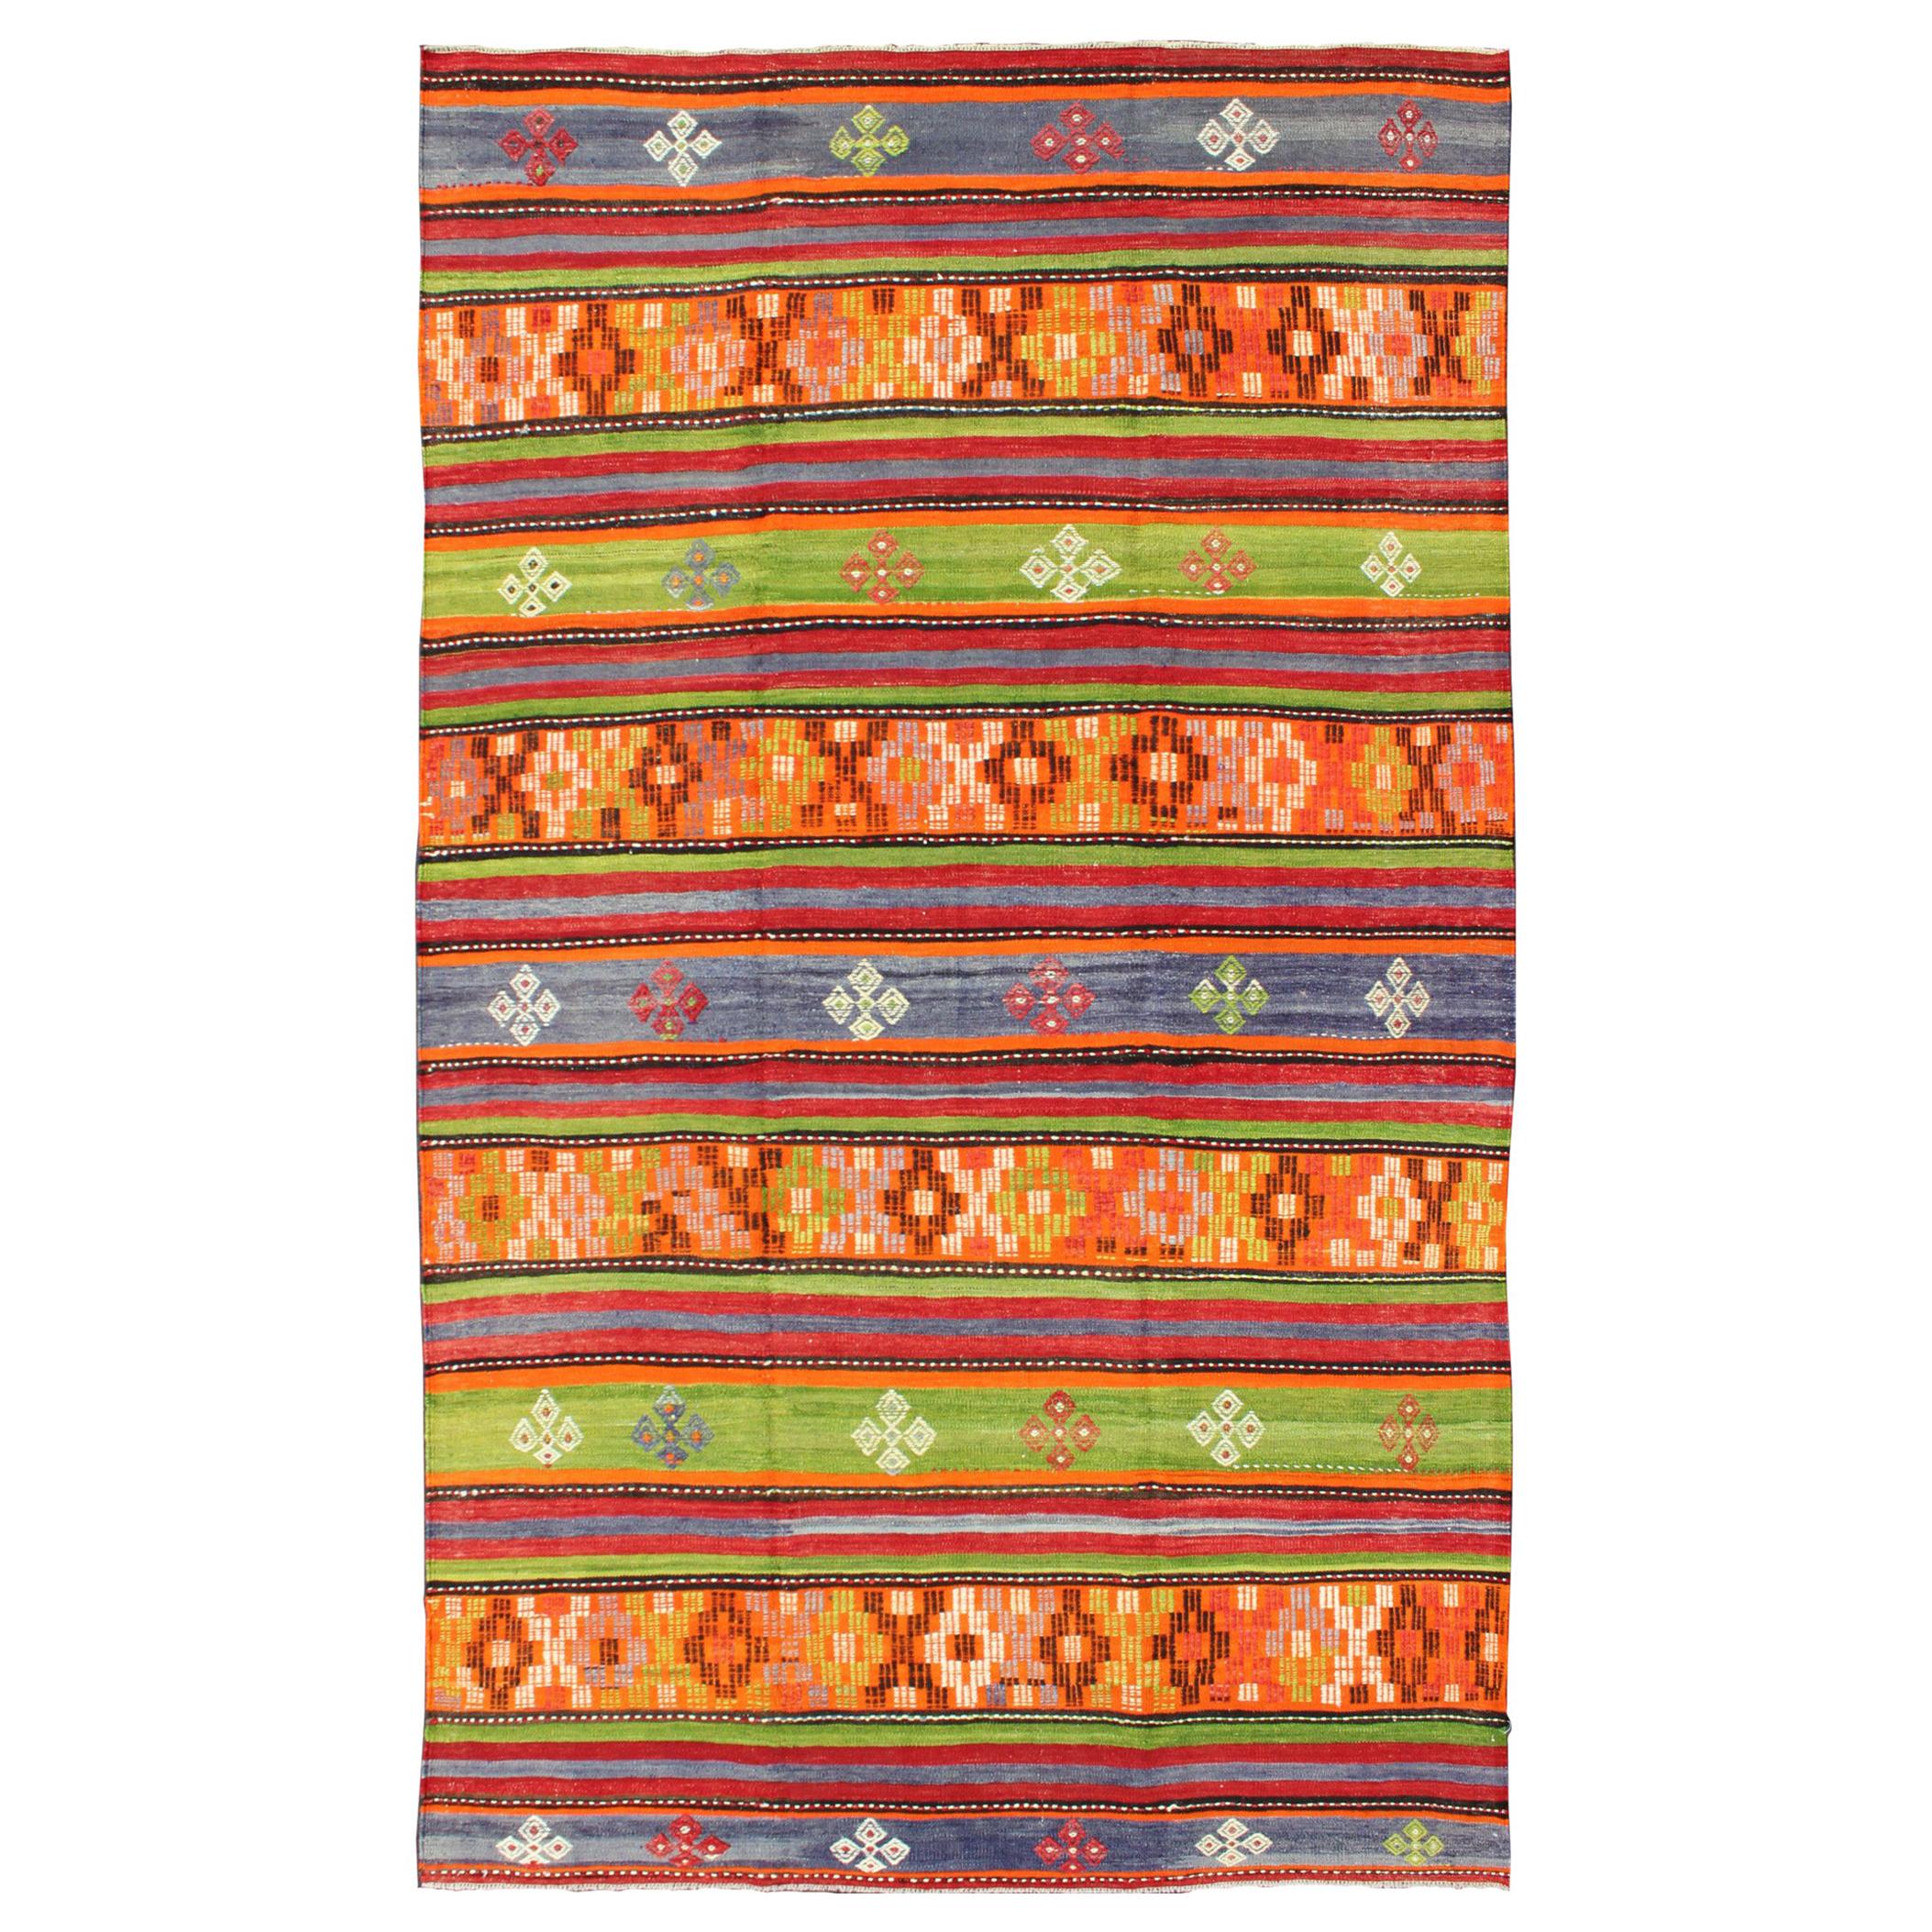  Bunter und heller türkischer Kelim-Teppich mit geometrischem Streifenmuster